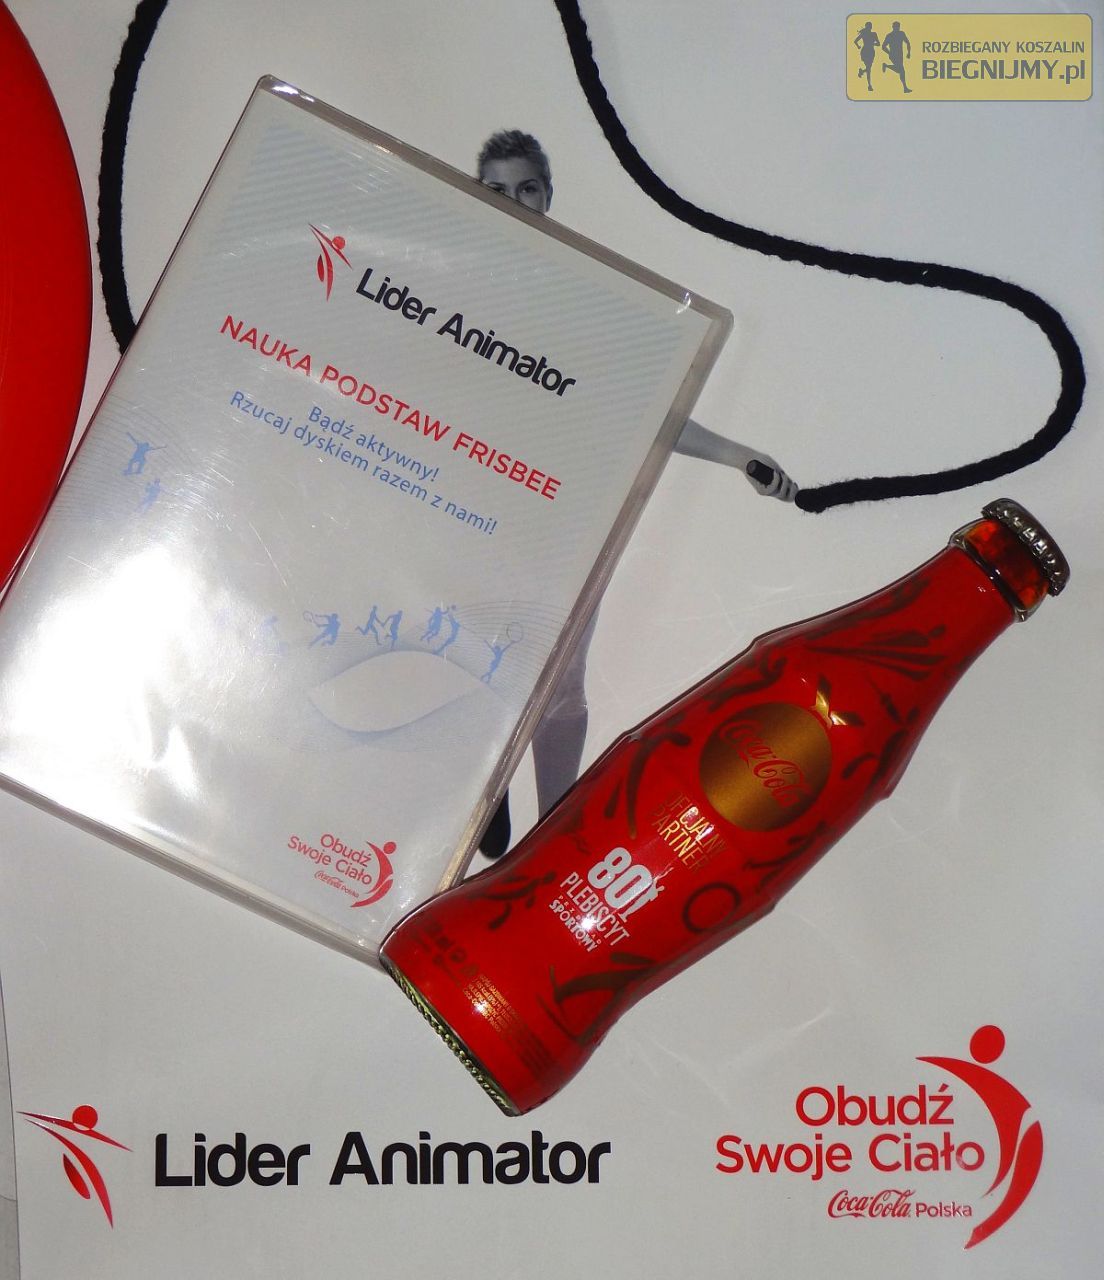 Unikalna butelka Coca-Cola od Lider Animator - Obudź Swoje Ciało dla Rozbieganego Koszalina